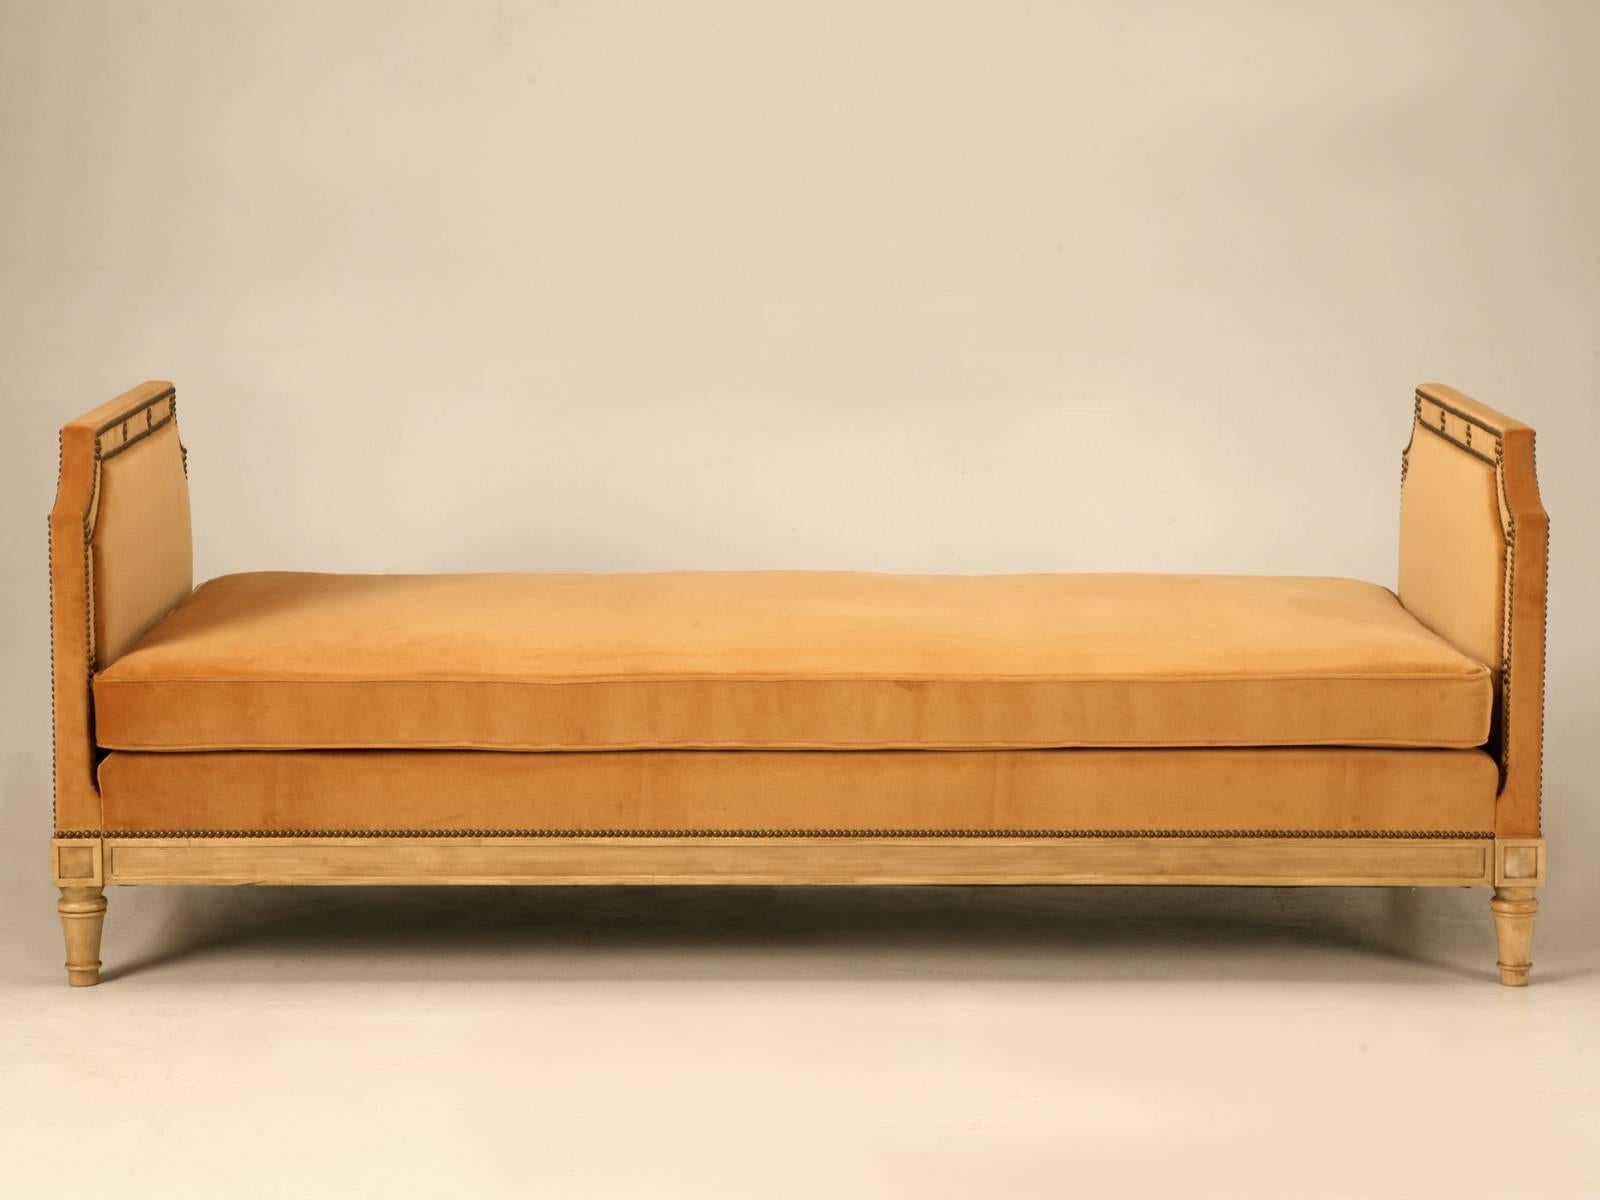 Notre atelier de planches anciennes, propose ce lit de jour d'inspiration française dans toutes les dimensions, jusqu'à un lit king-size et bien sûr il peut être COM. Les cadres sont généralement fabriqués en érable massif, mais vous pouvez choisir